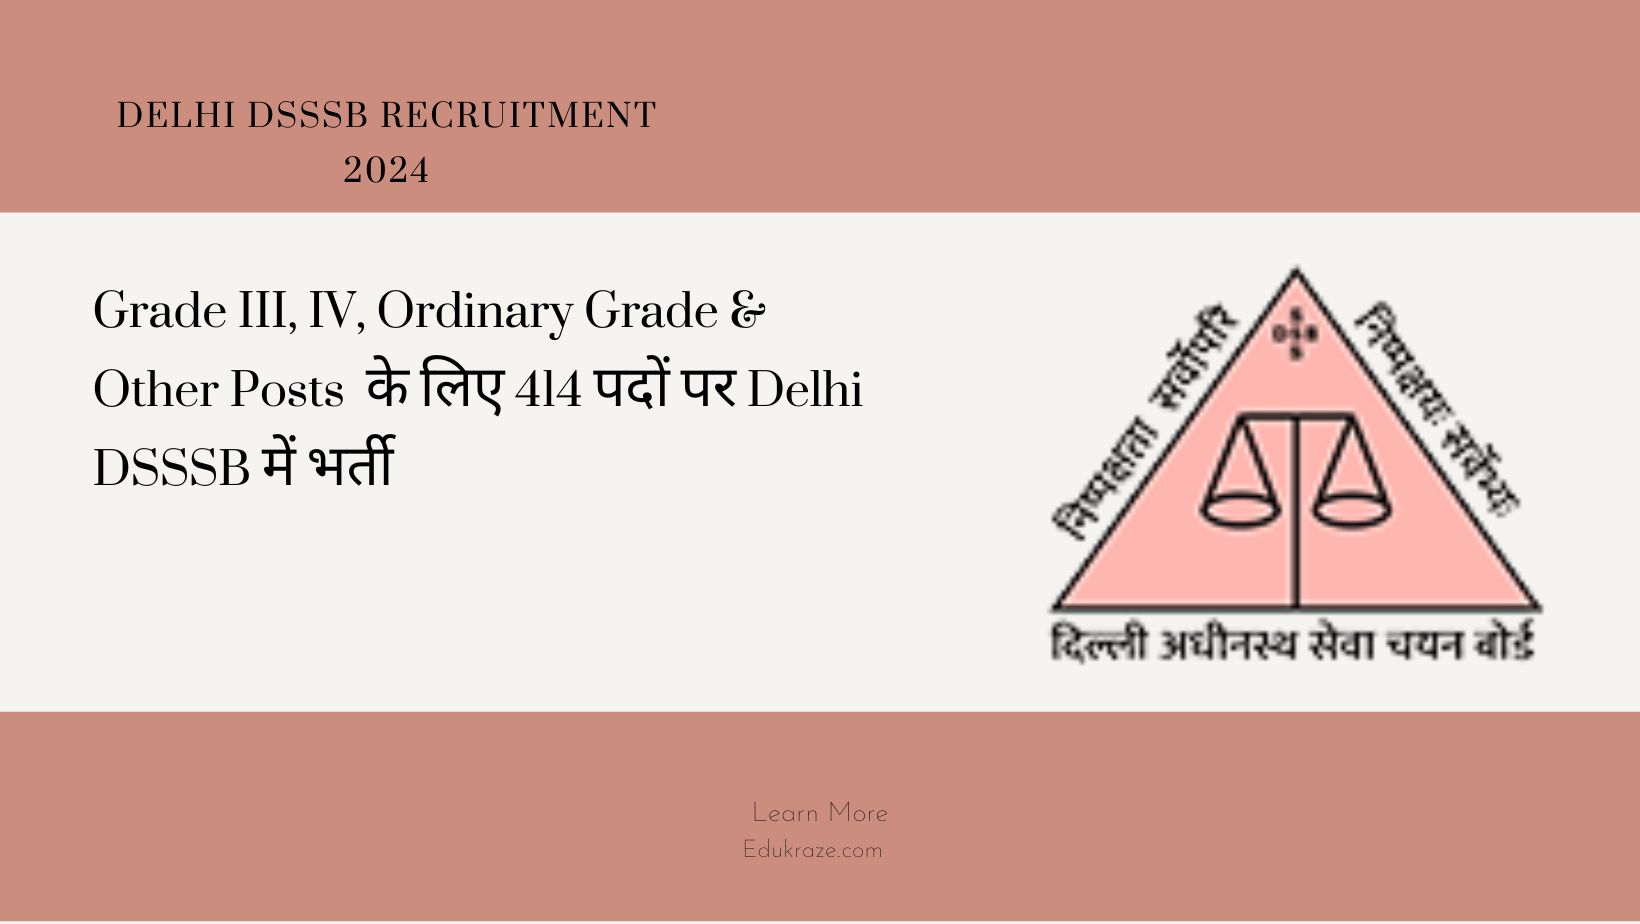 Grade III, IV, Ordinary Grade & Other Posts Recruitment 2024 Out at Delhi DSSSB